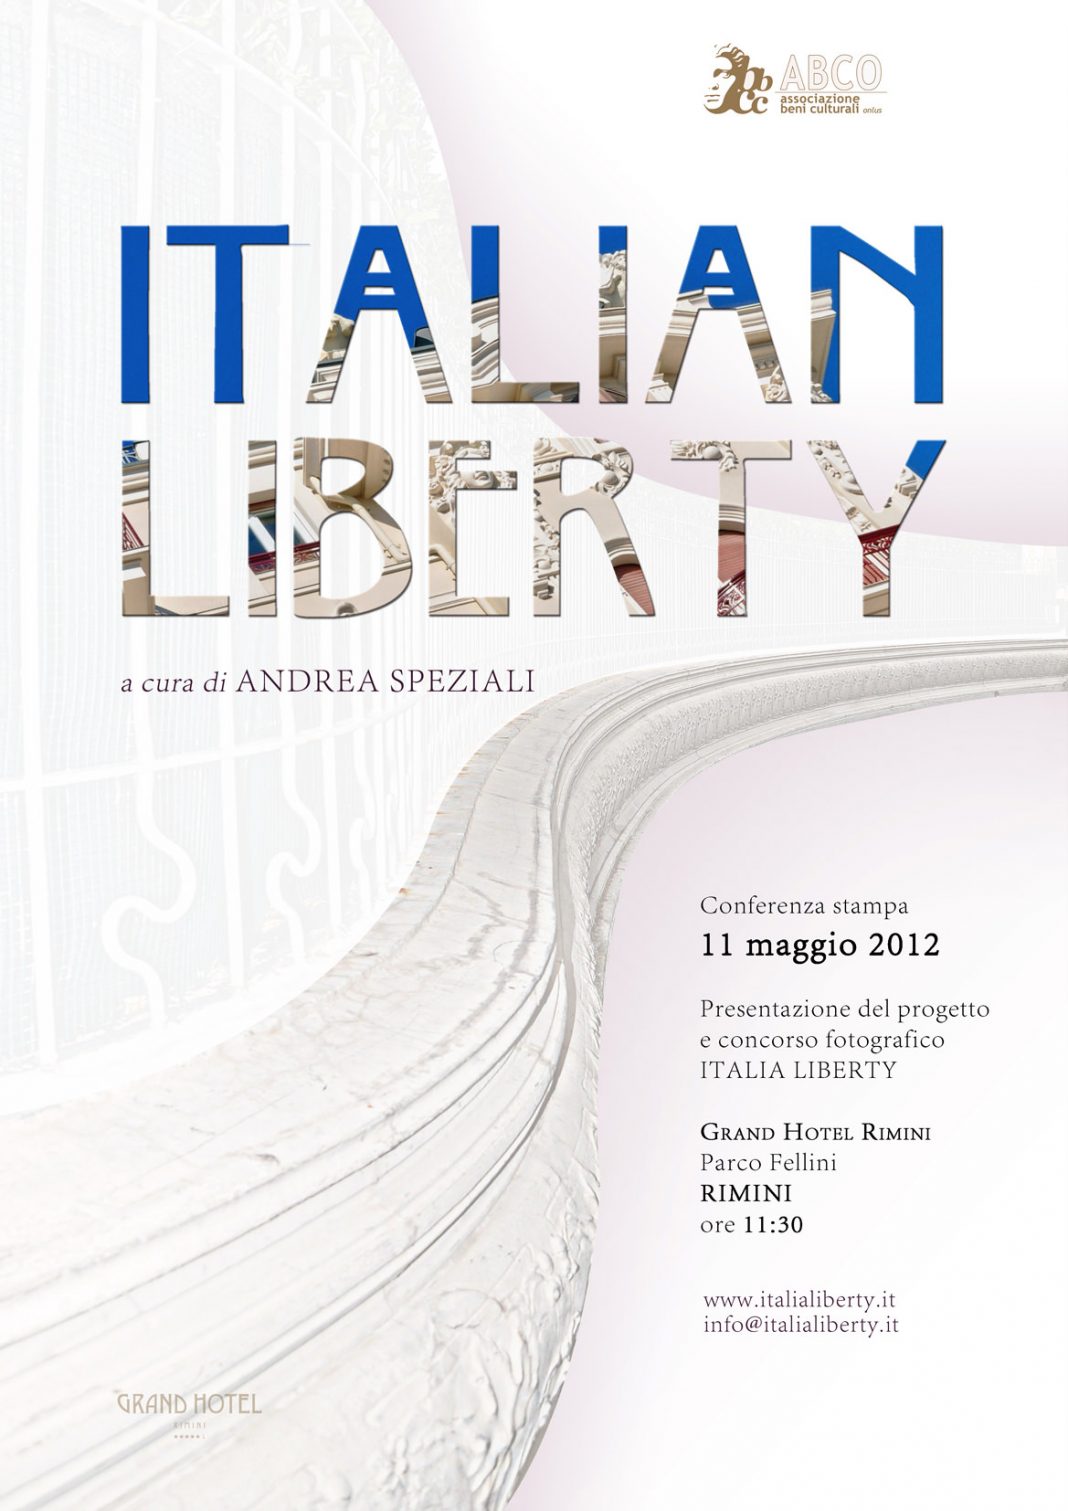 ITALIAN LIBERTY, dalla Romagna all’Italia Libertyhttps://www.exibart.com/repository/media/eventi/2012/04/italian-liberty-dalla-romagna-all8217italia-liberty-1-1068x1511.jpg